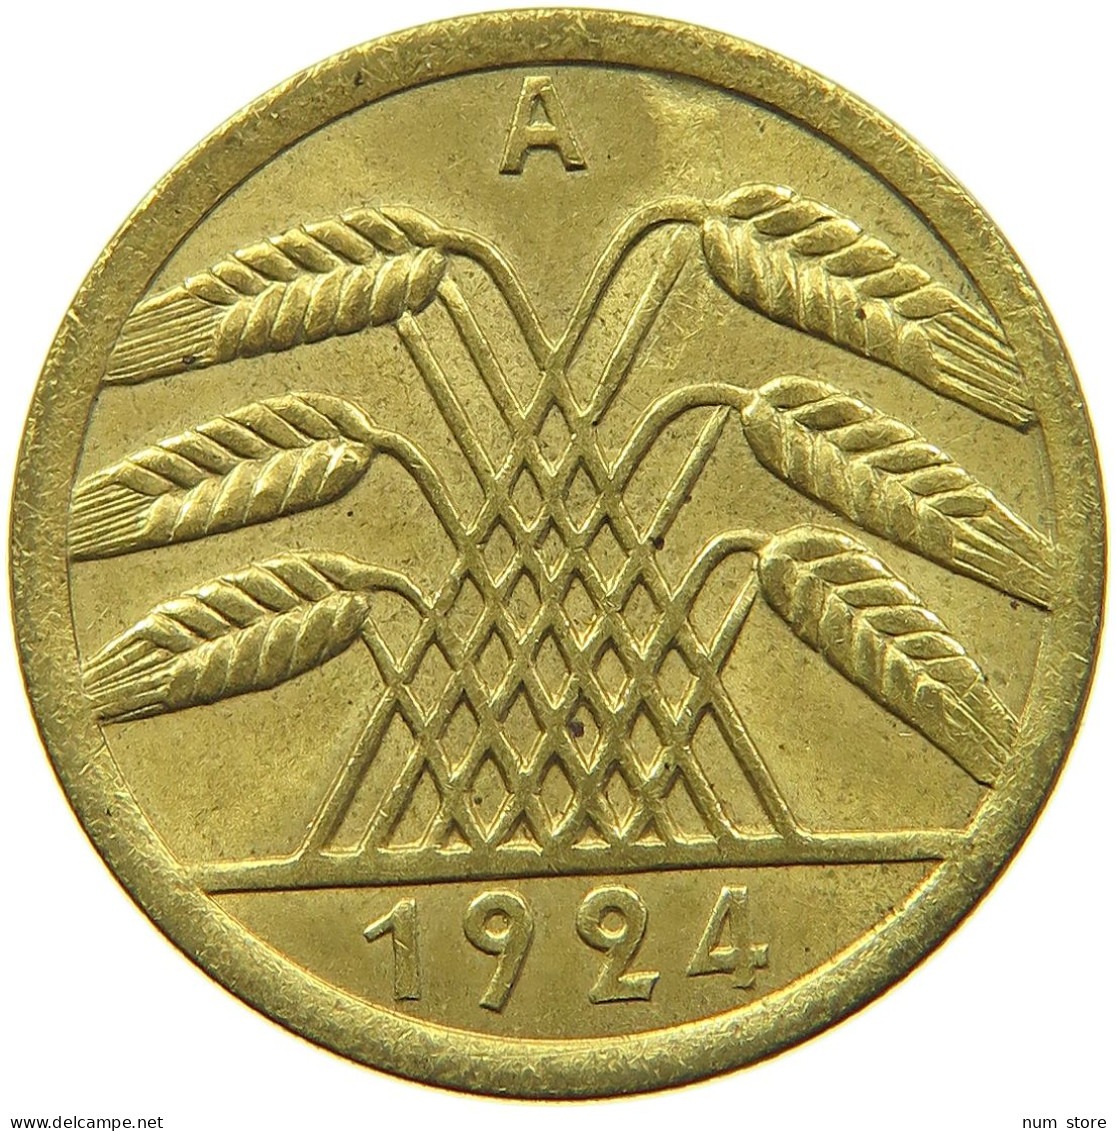 WEIMARER REPUBLIK 50 RENTENPFENNIG 1924 A  #t029 0215 - 50 Renten- & 50 Reichspfennig